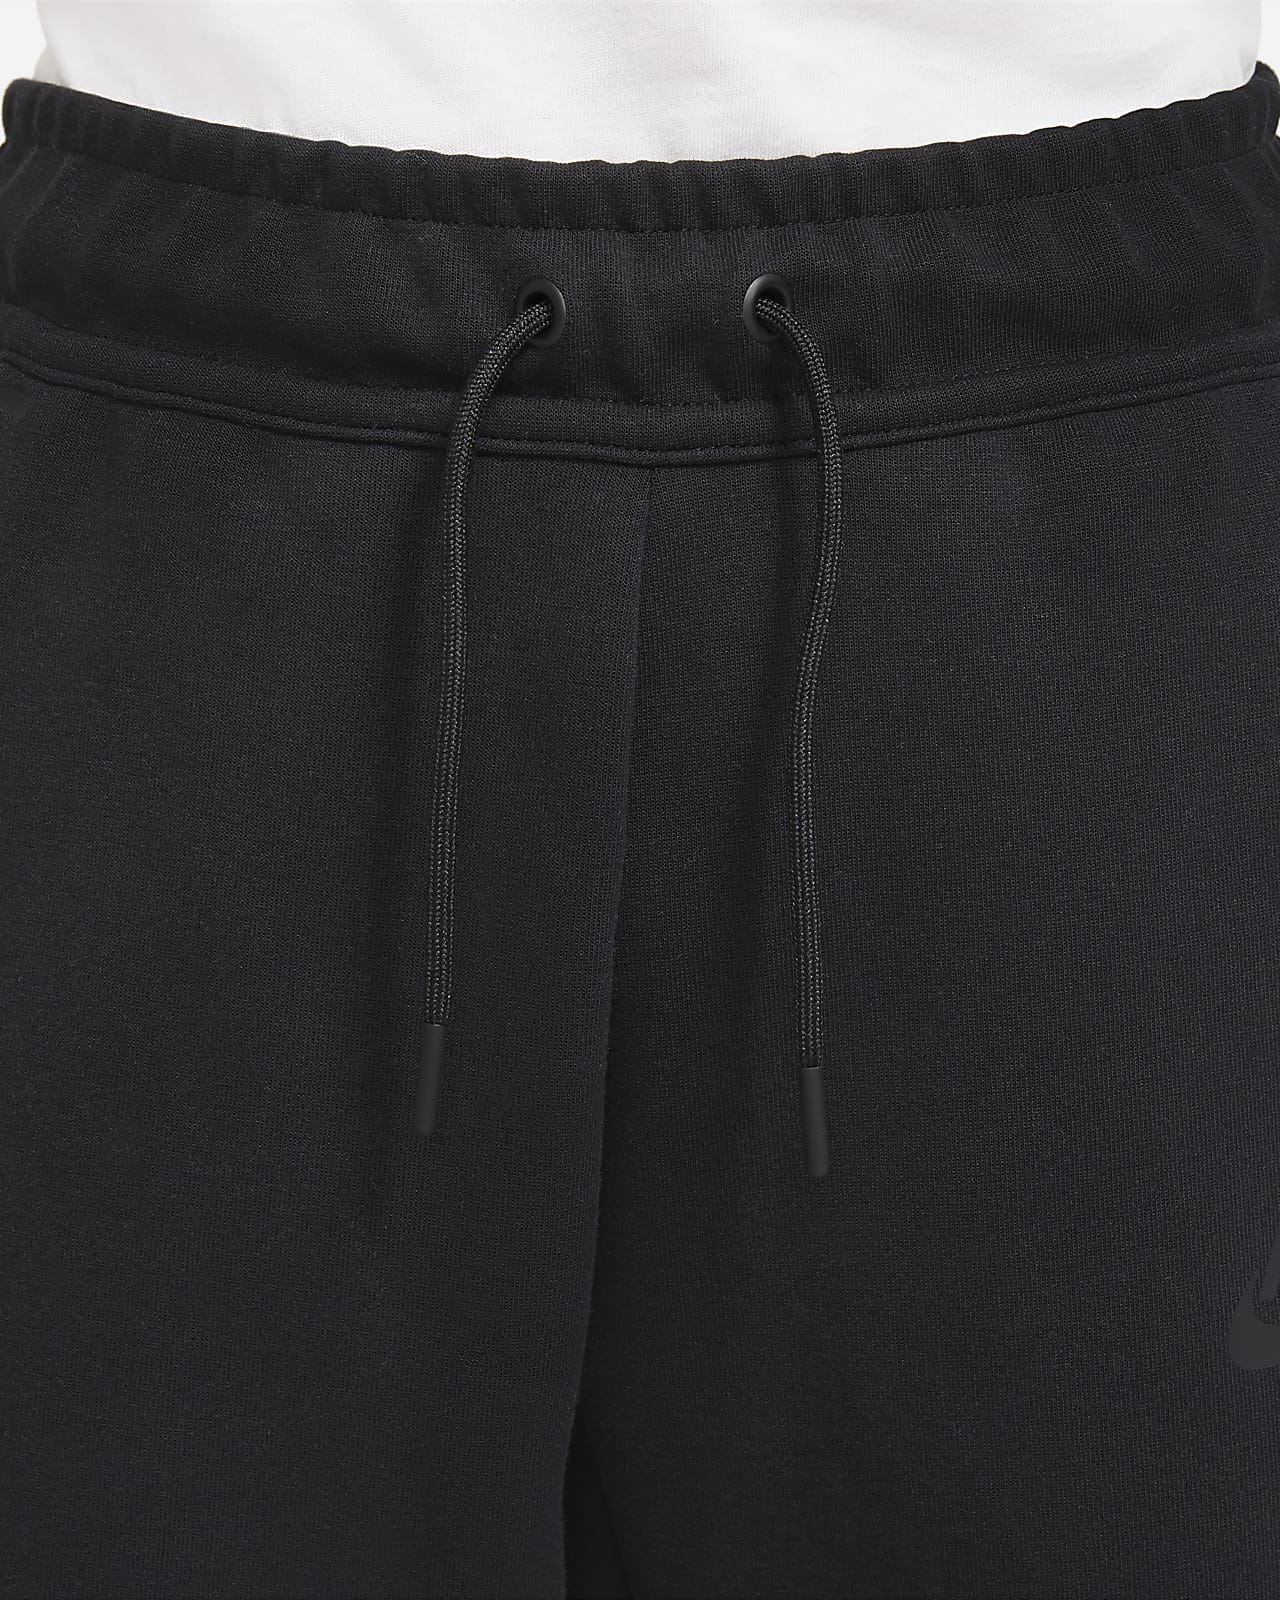 Nike Sportswear Tech Fleece Big Kids' Pants